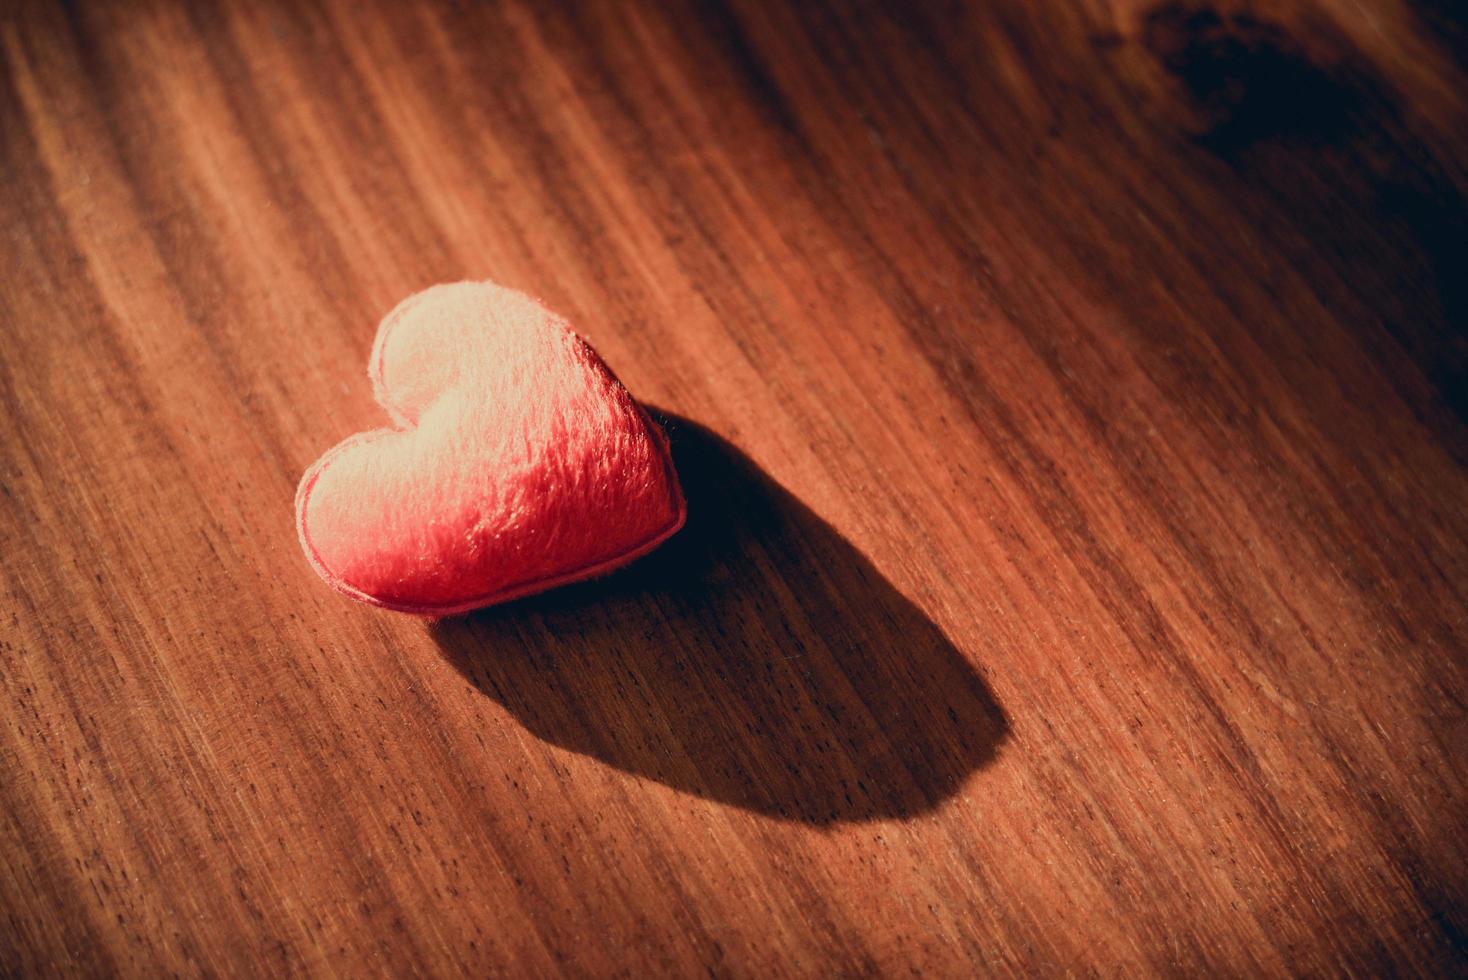 solitário, triste, de coração partido, desapontado, conceito do dia dos namorados - corações em um fundo de madeira foto